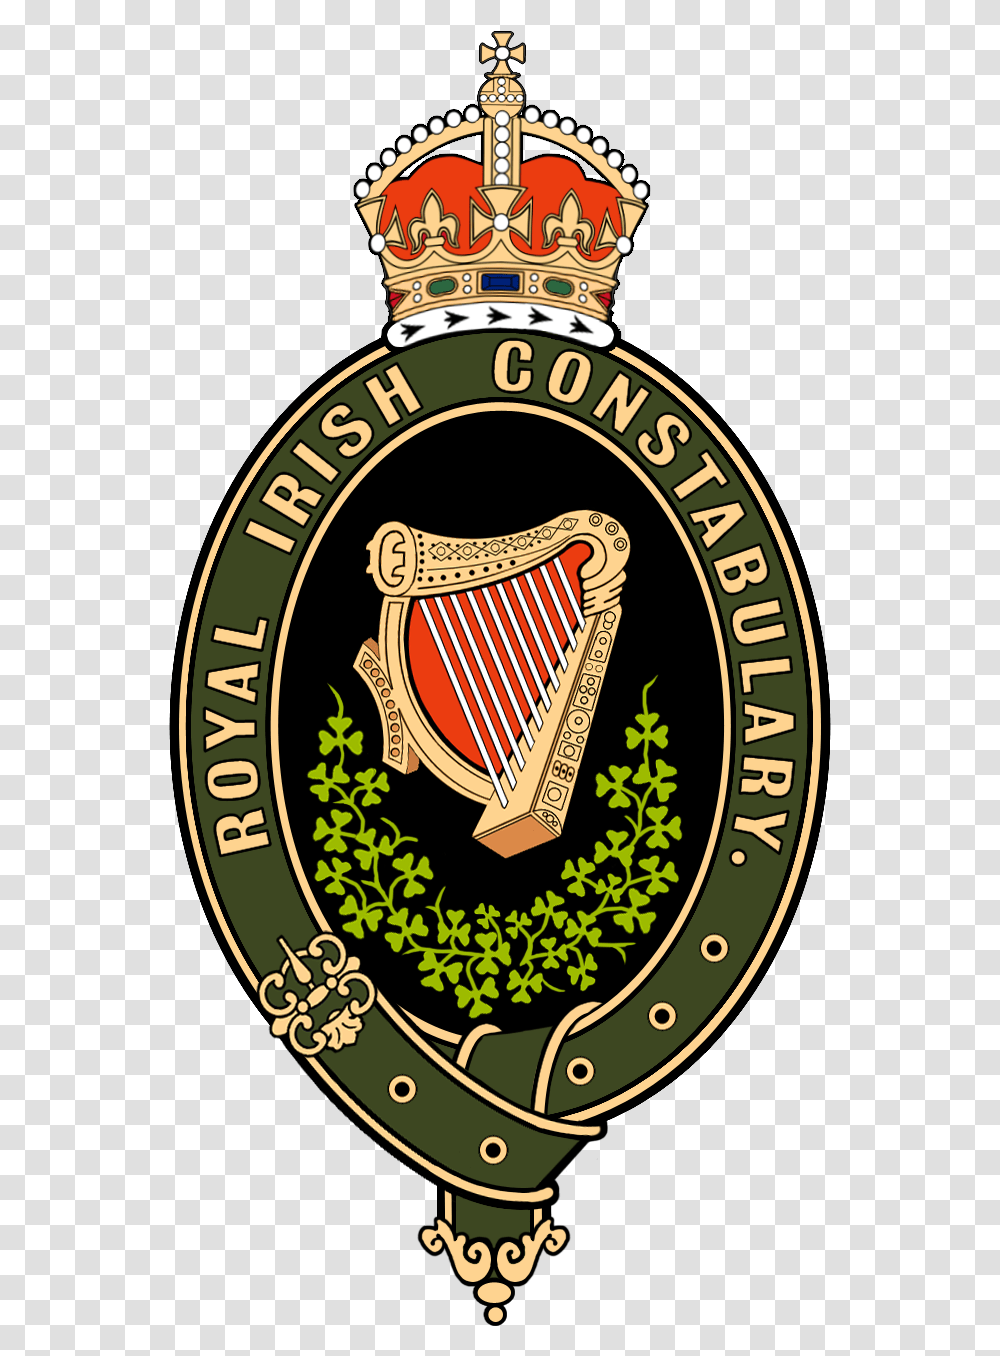 Royal Irish Constabulary Badge House Of Xtravaganza Logo, Trademark, Emblem Transparent Png